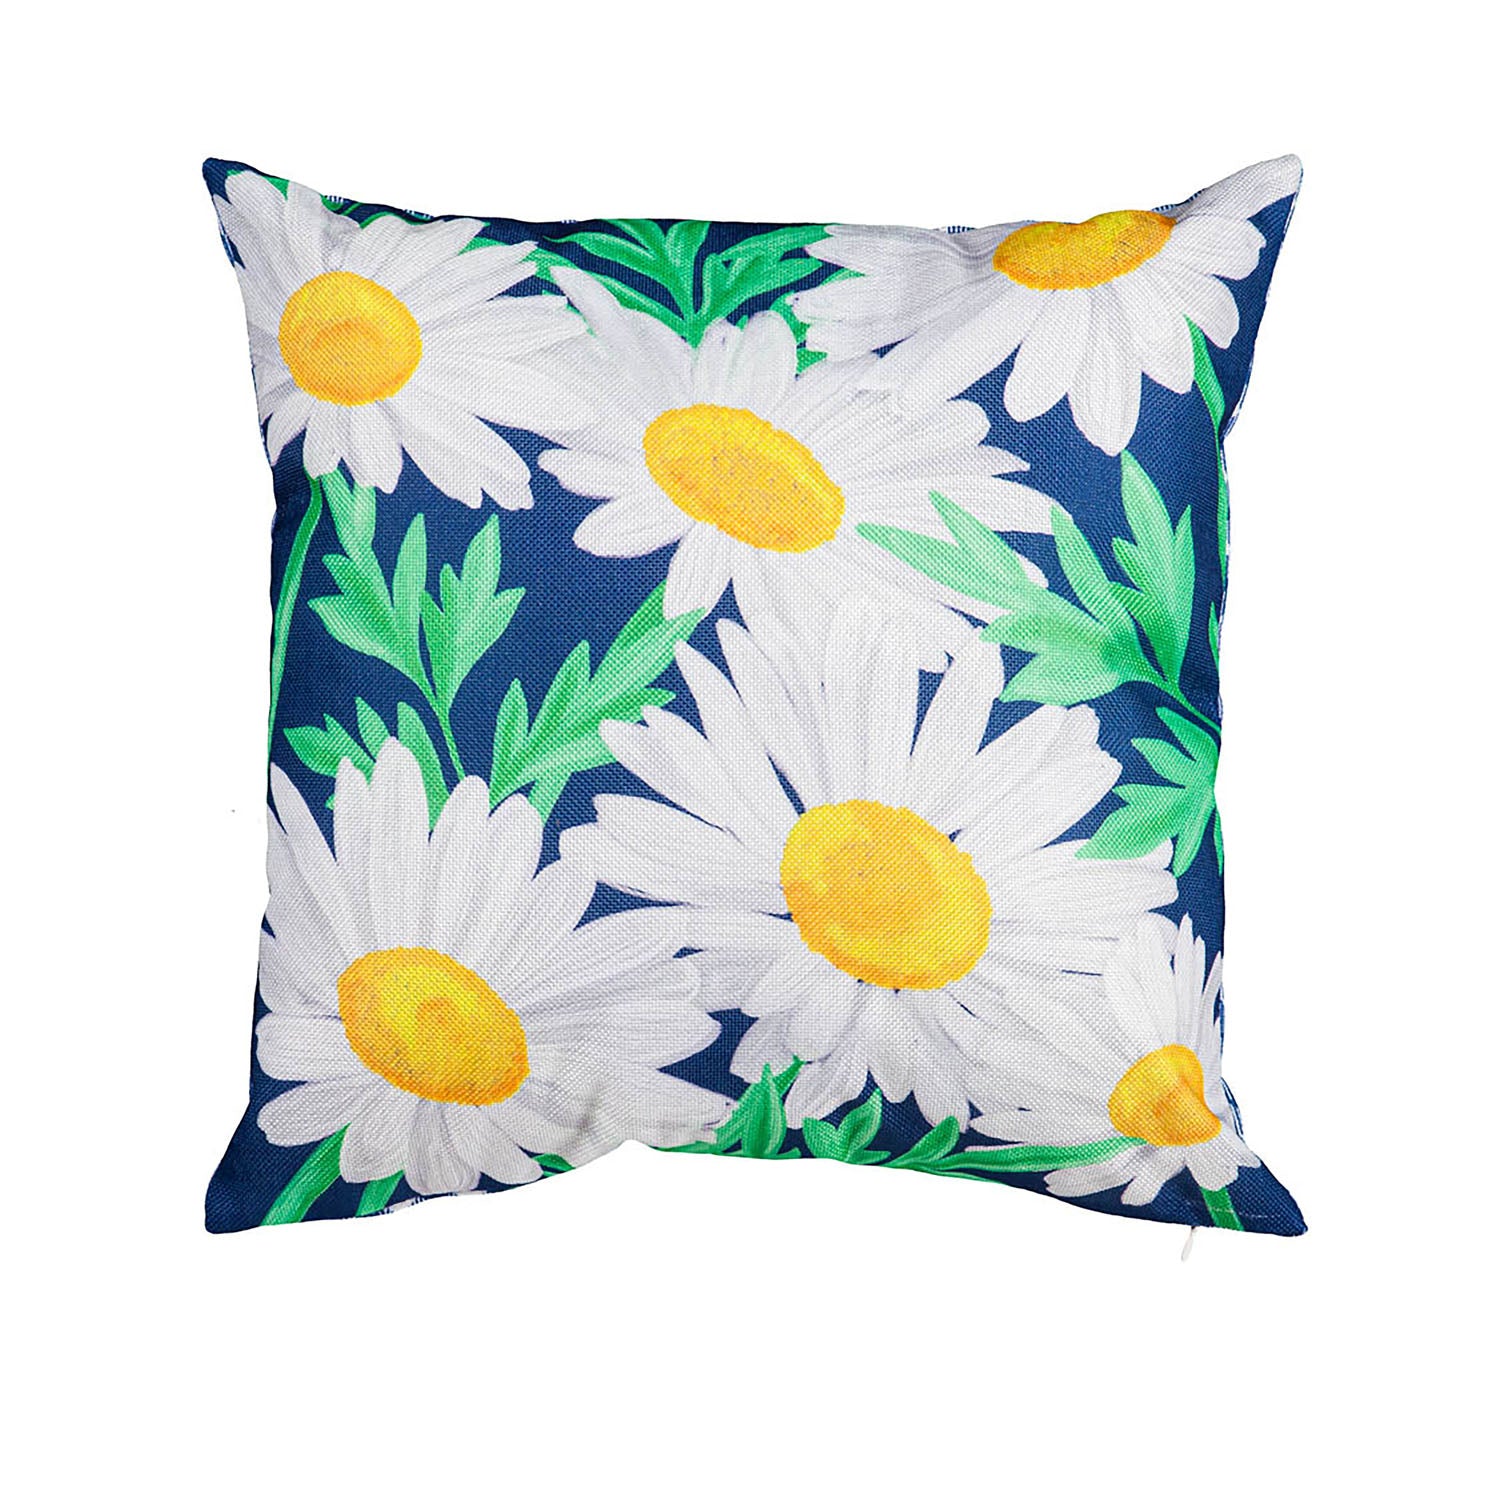 Daisy Garden Pillow Cover